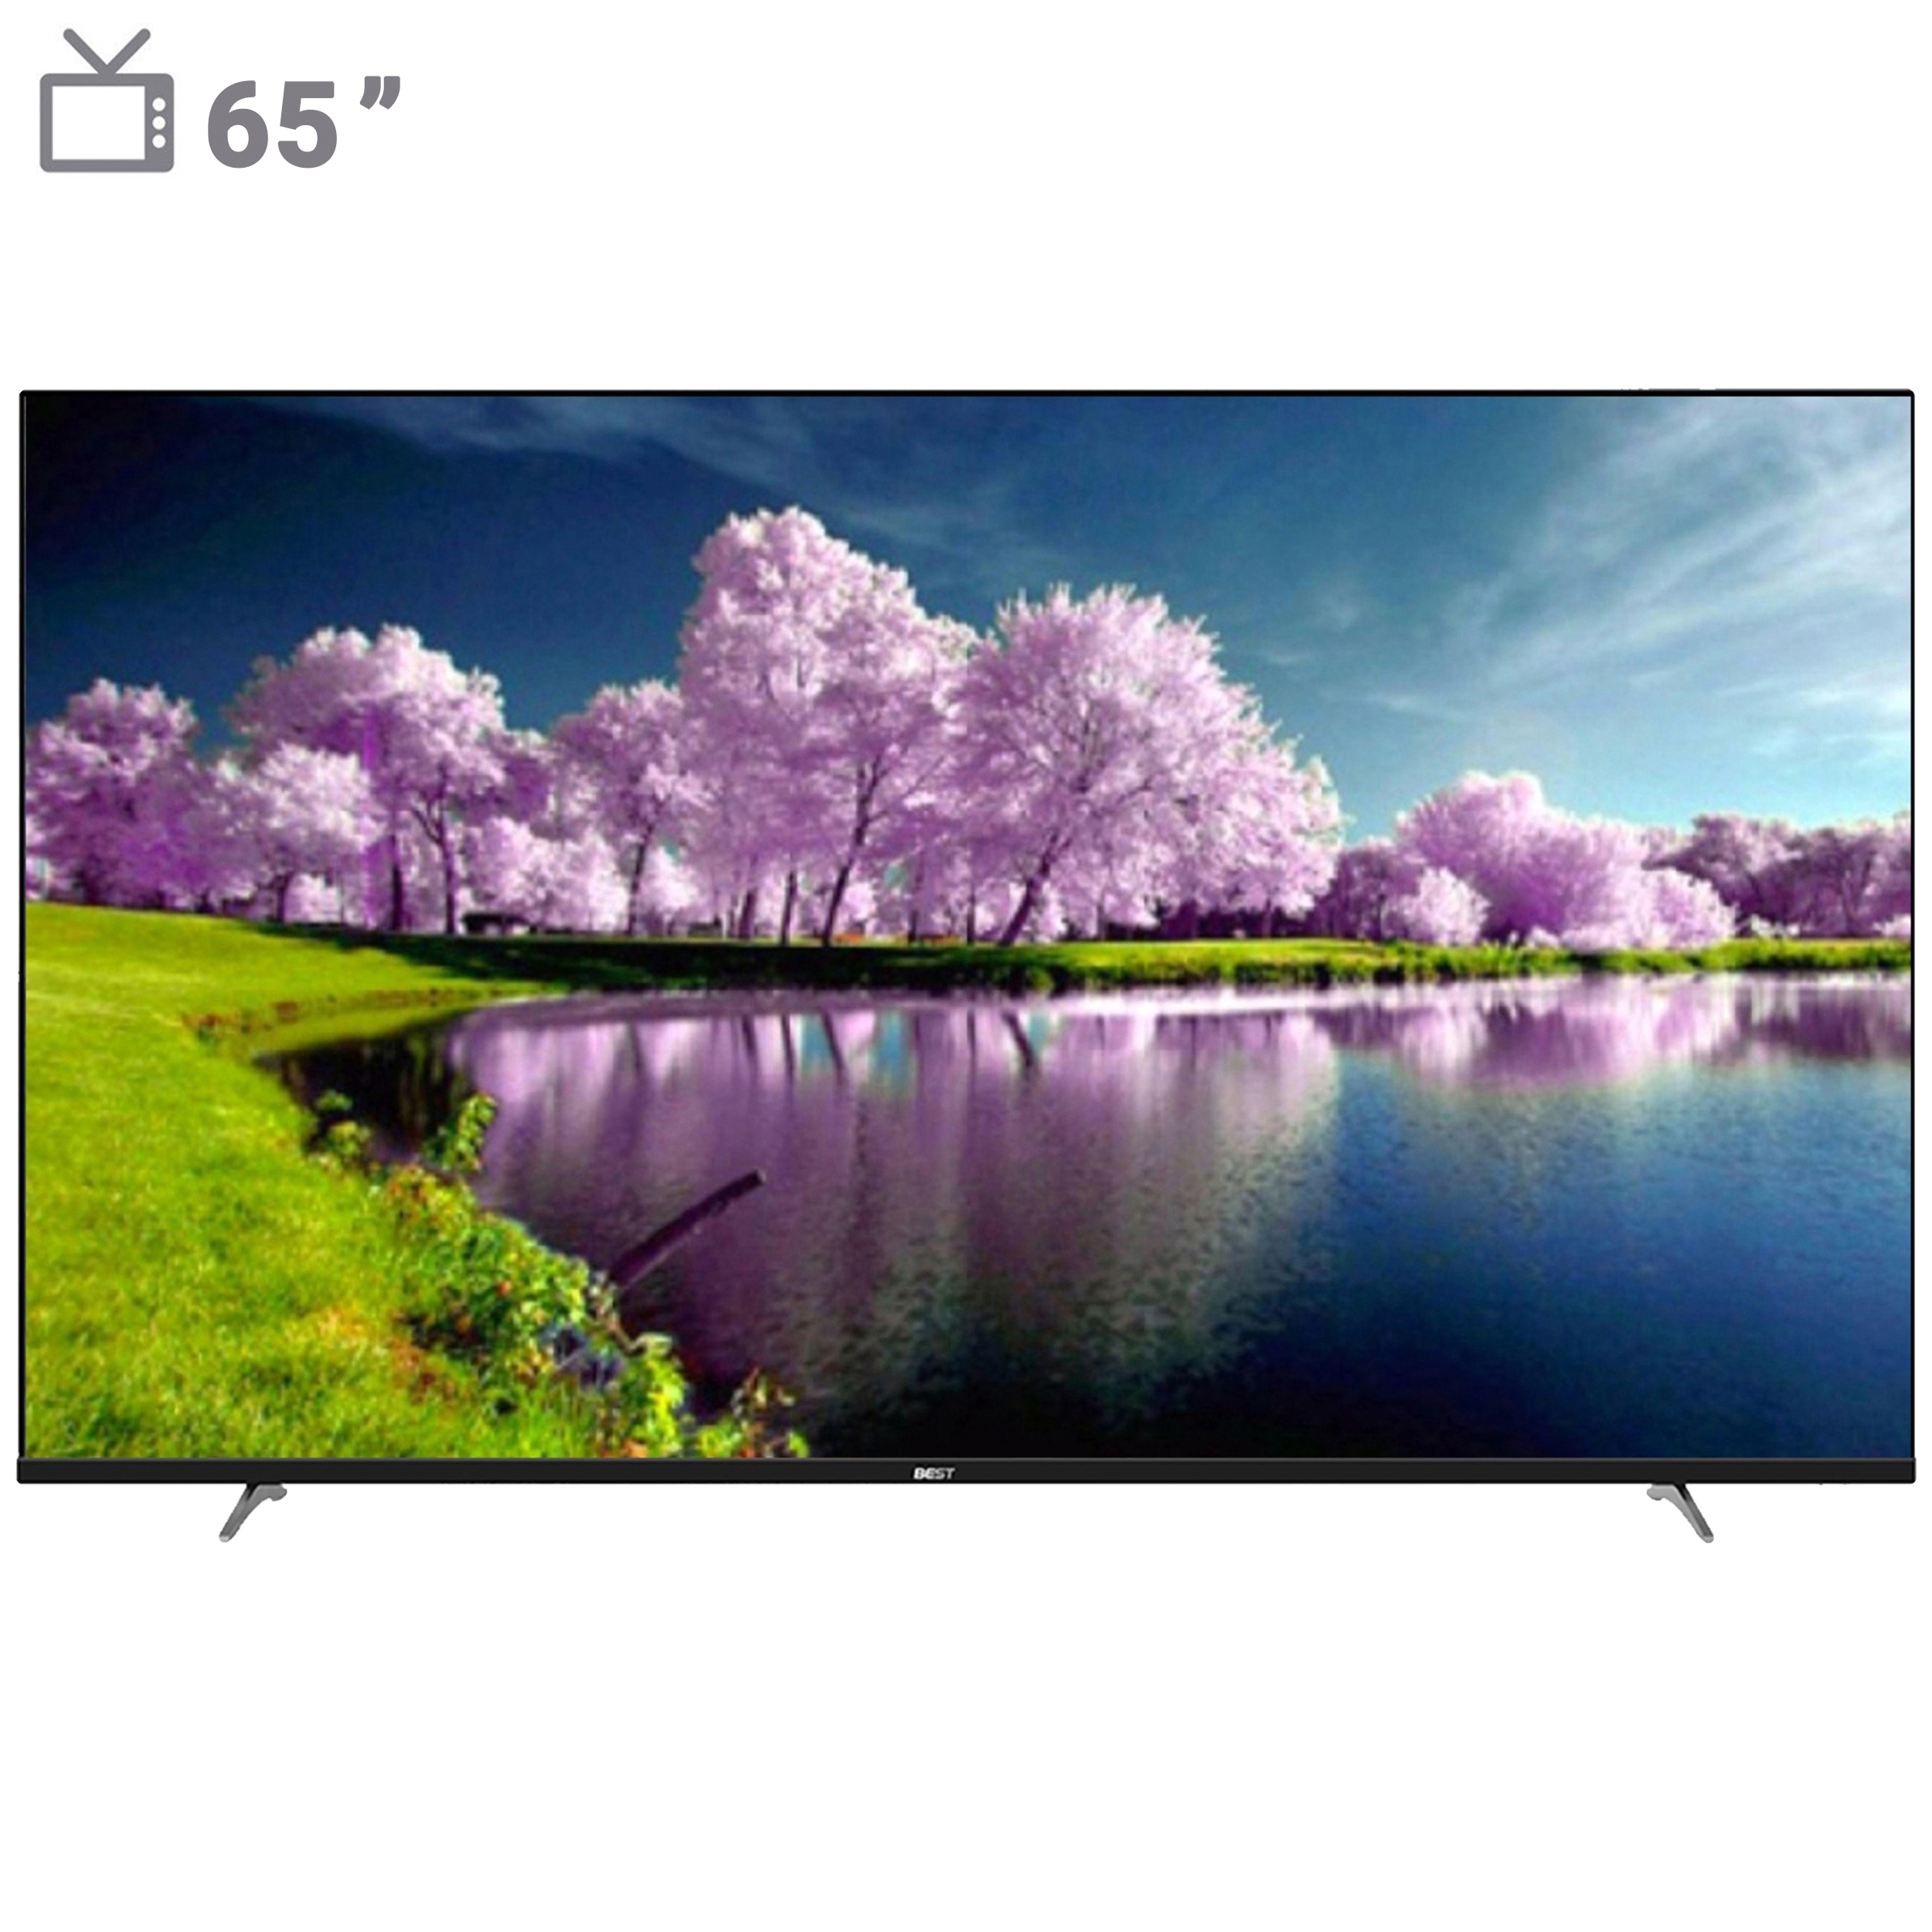 تلویزیون ال ای دی هوشمند بست الکتریک مدل BUS65 سایز 65 اینچ